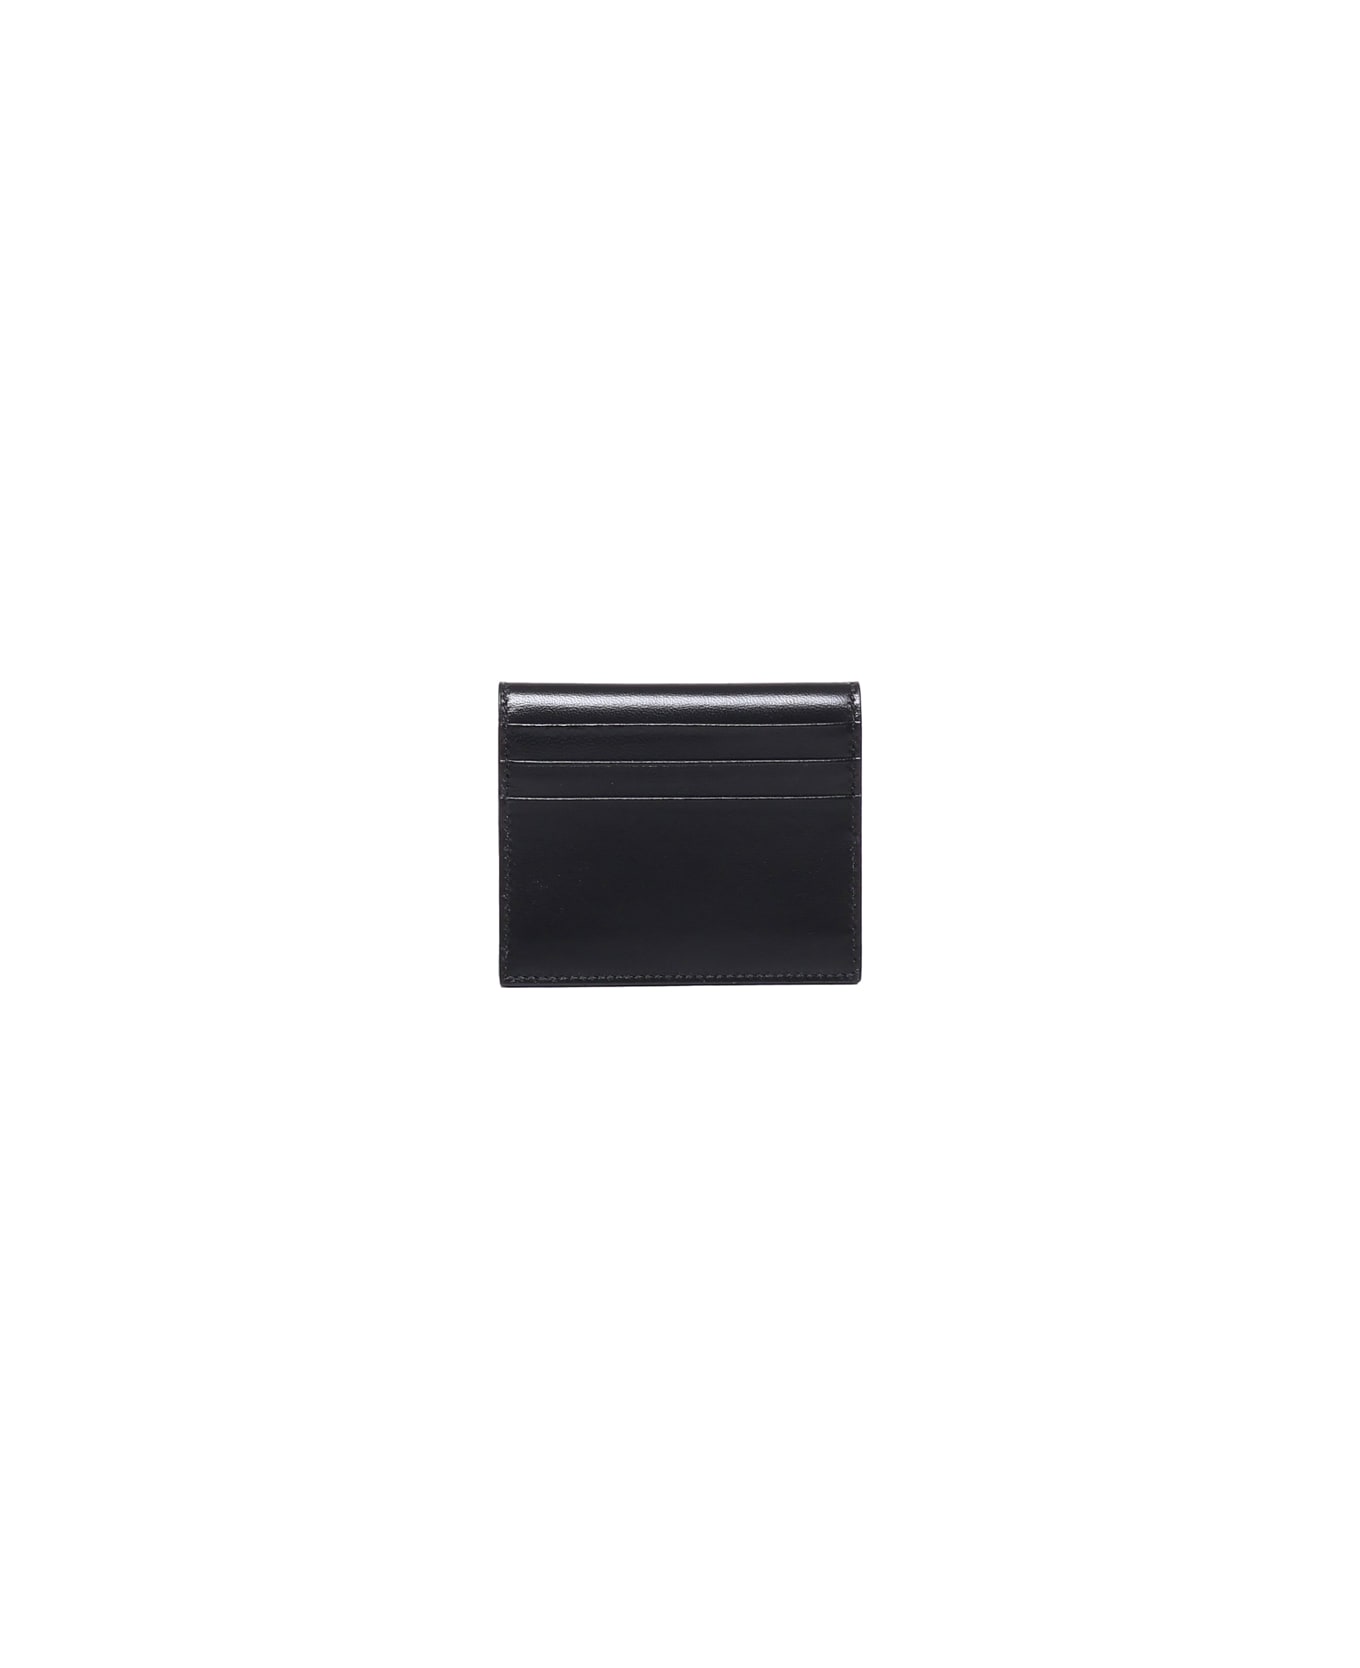 Saint Laurent Paris Reversible Card Case - Black